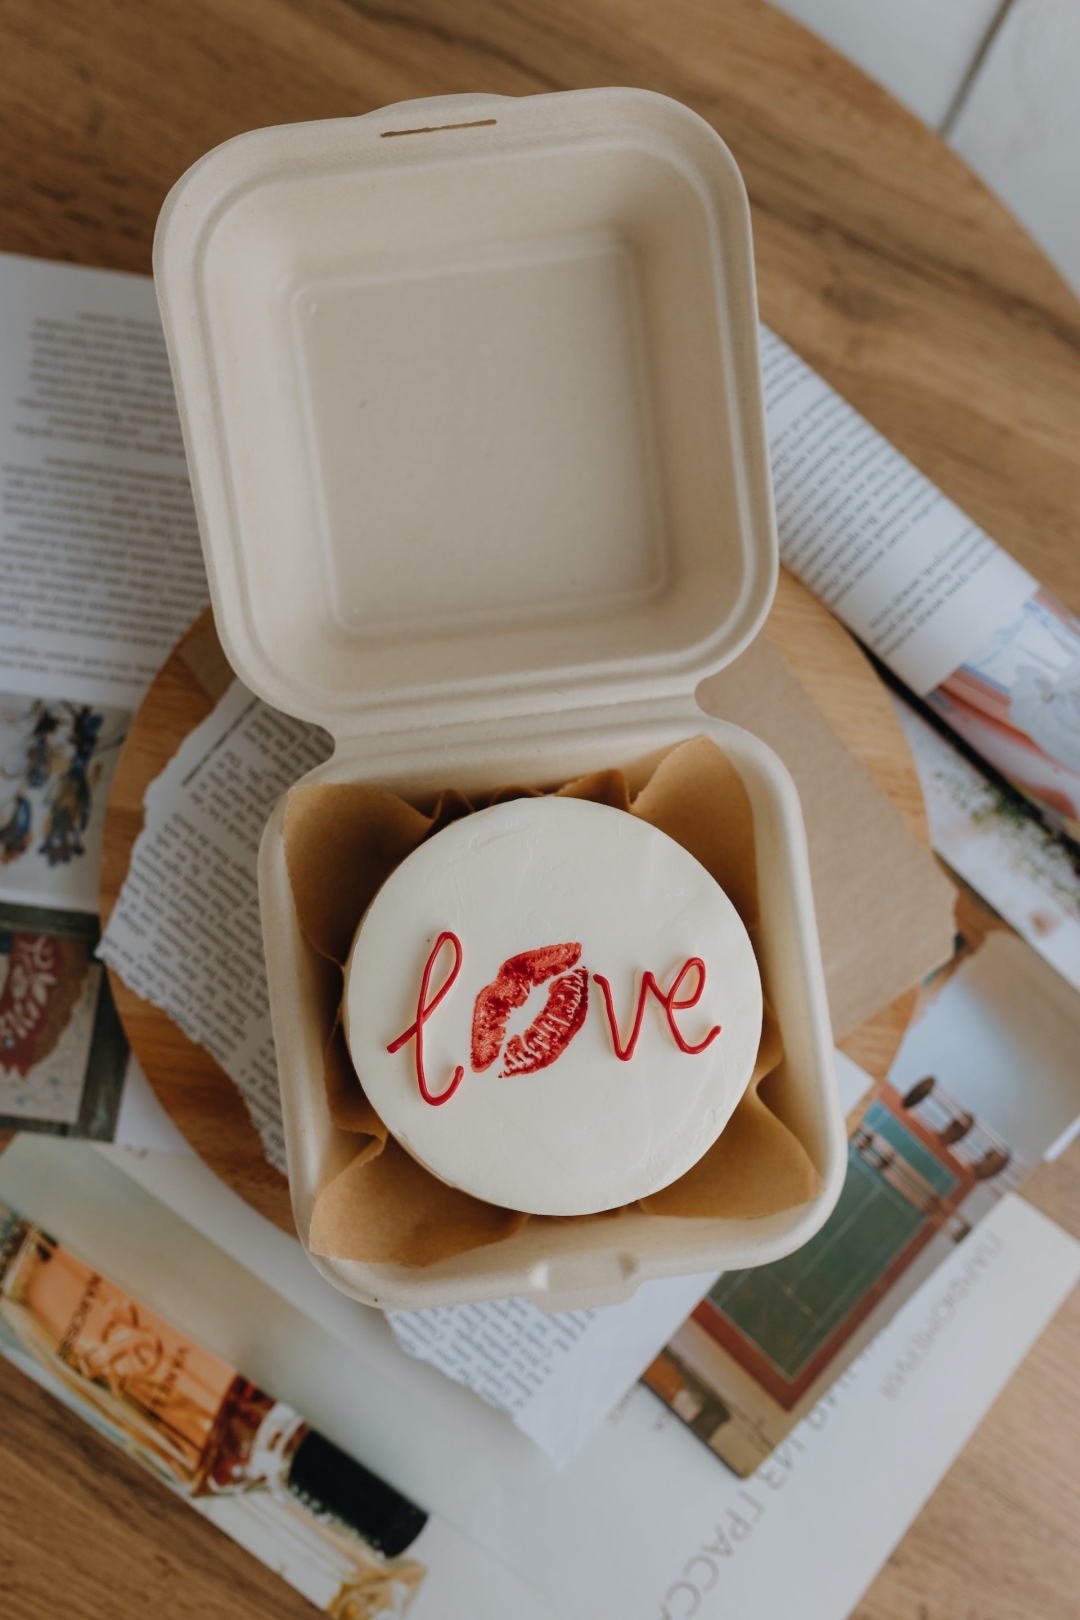 Kolači za Valentinovo: Izdvojili smo ponudu zagrebačkih slastičarnica u znaku ljubavi